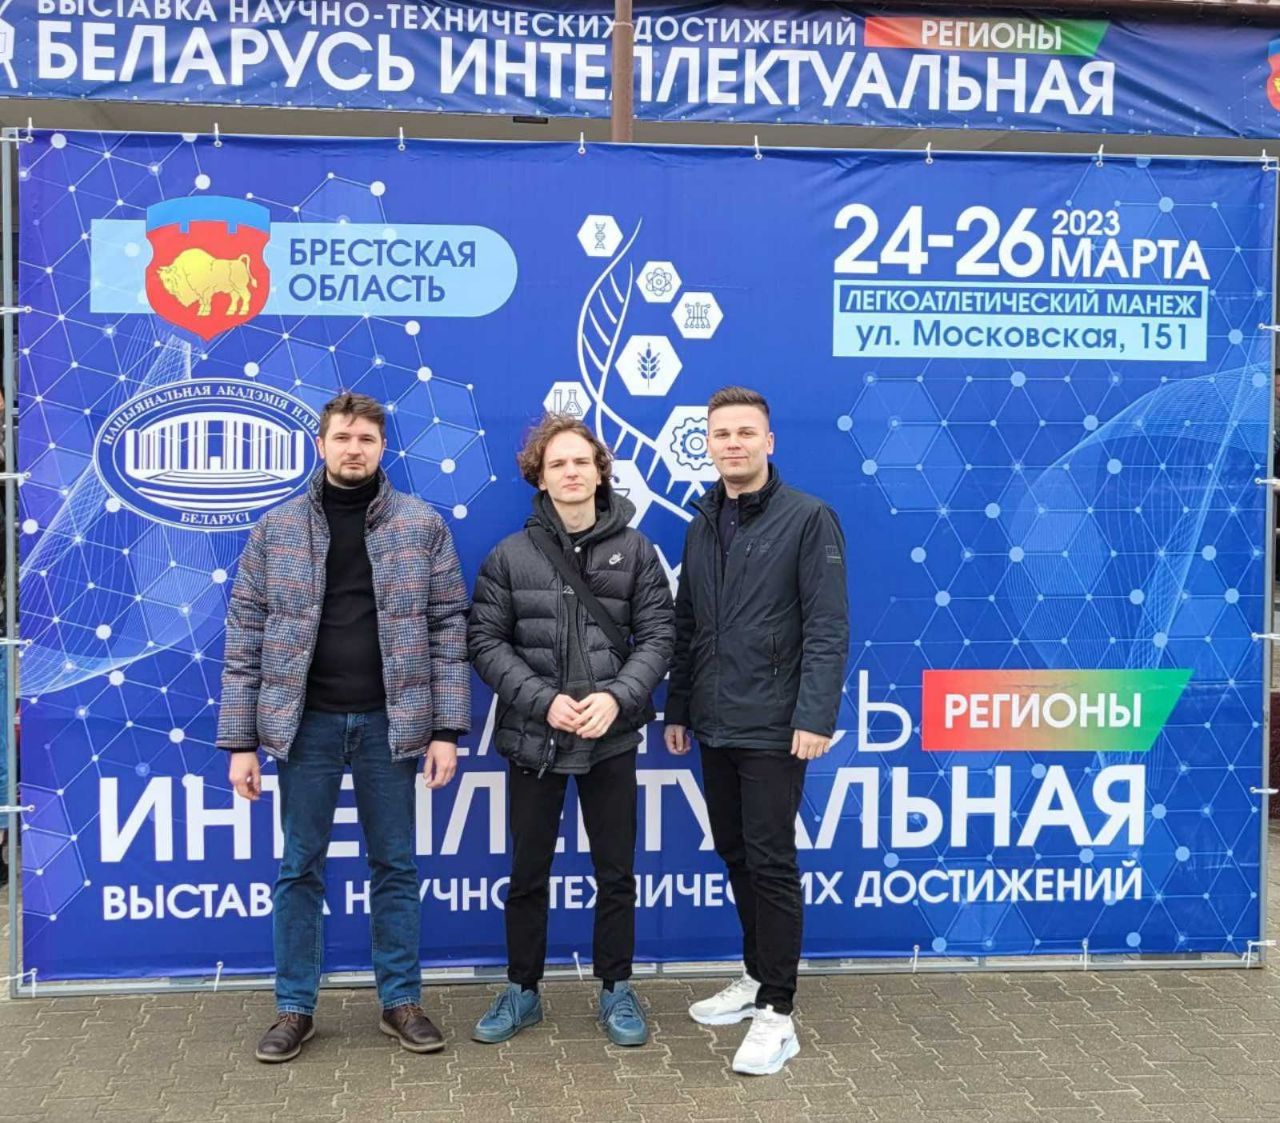 Масштабная выставка "Беларусь интеллектуальная" открылась в Бресте